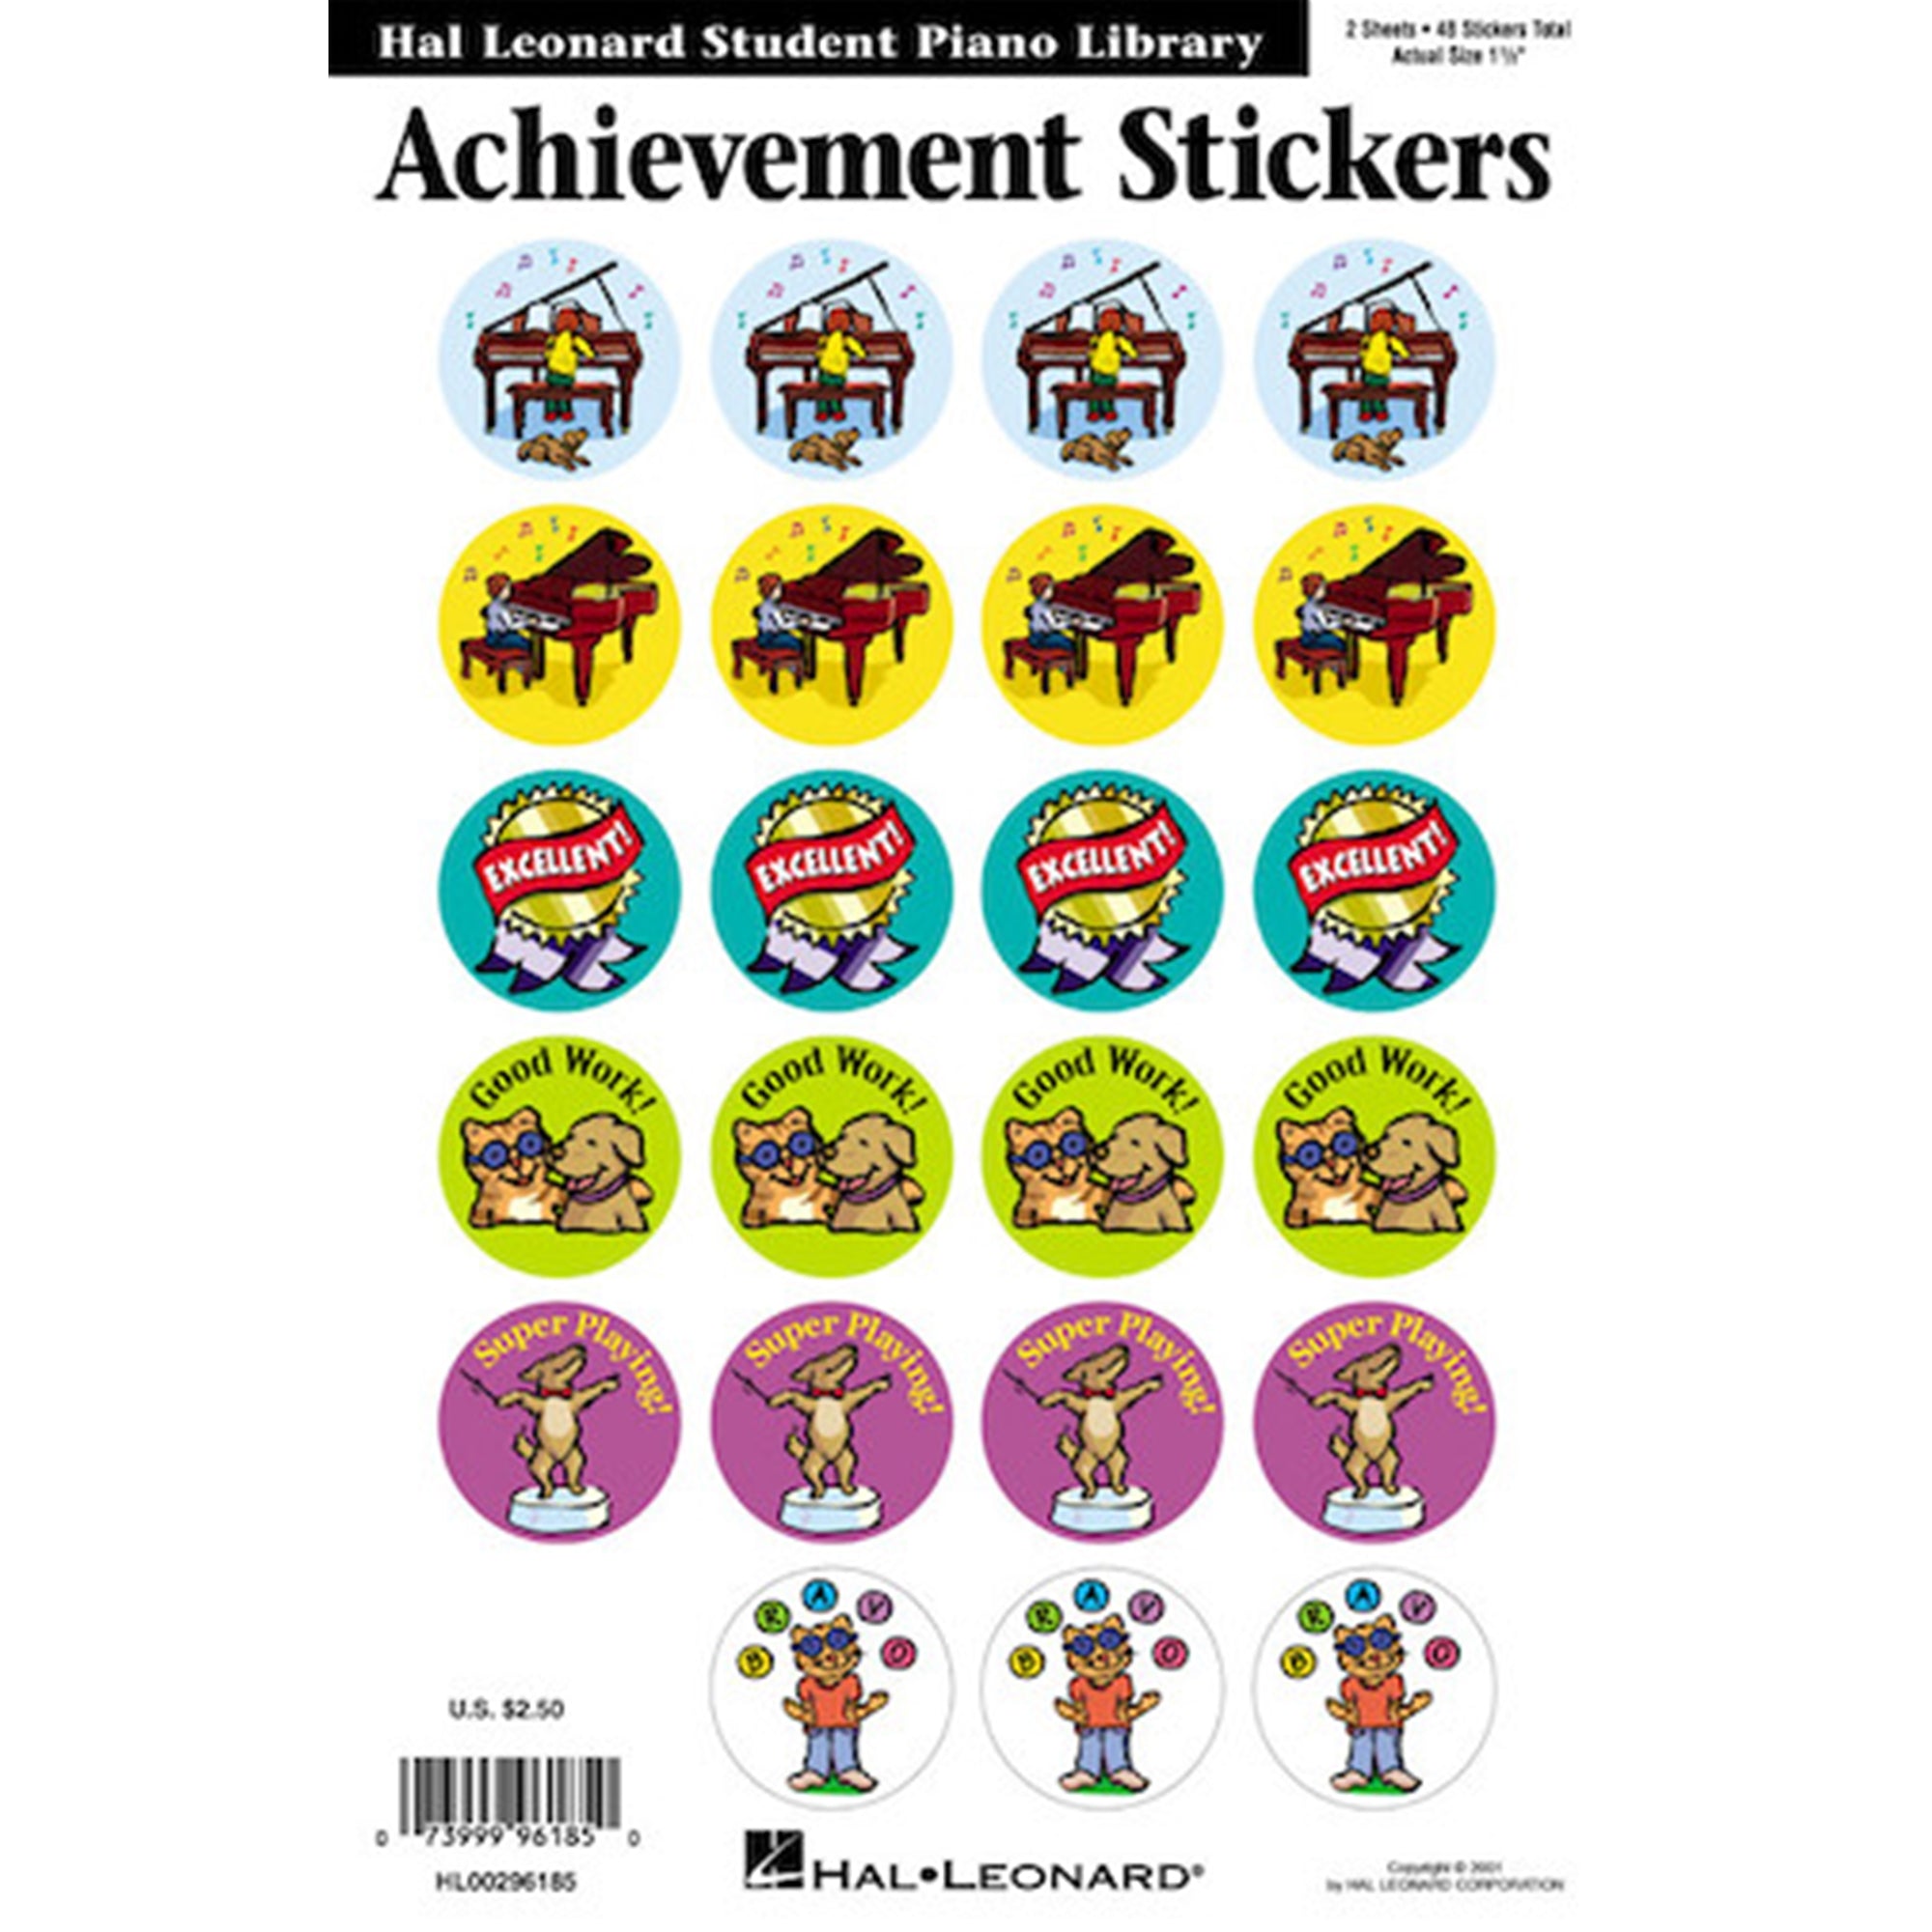 HAL LEONARD 296185 Achievement Stickers